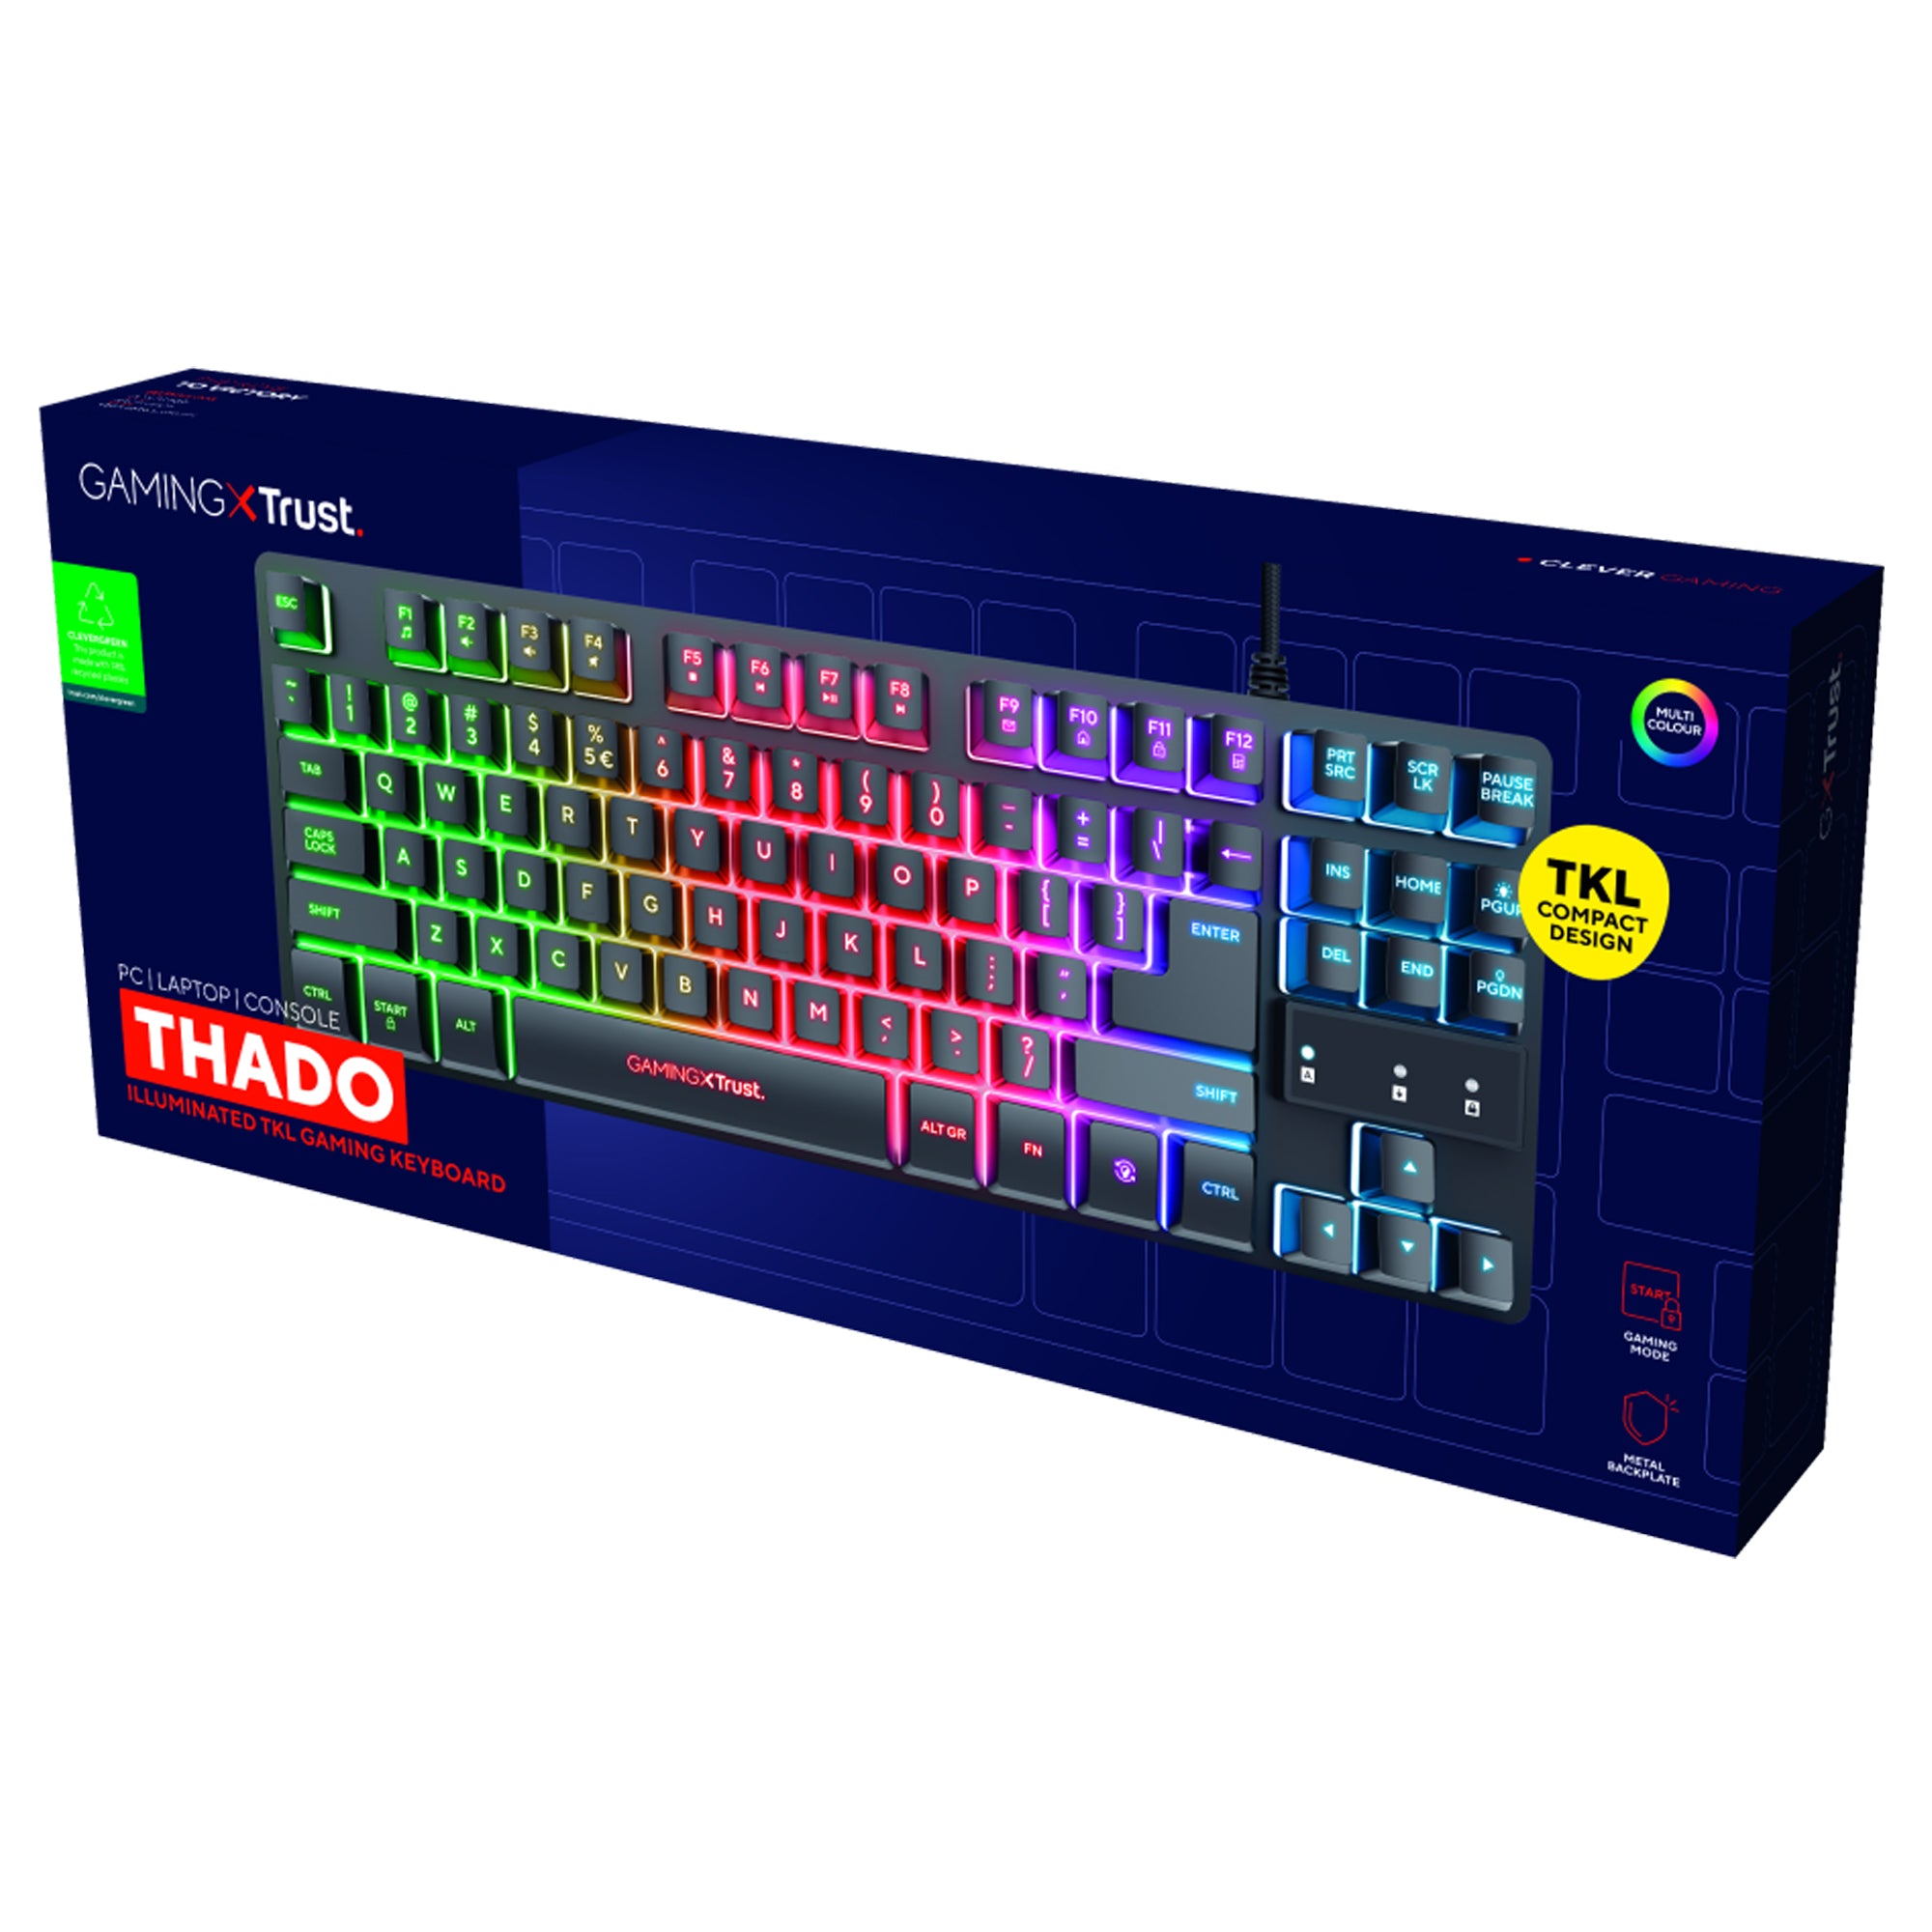 trust-tastiera-gaming-metallo-illuminazione-led-multicolore-gx833-thado